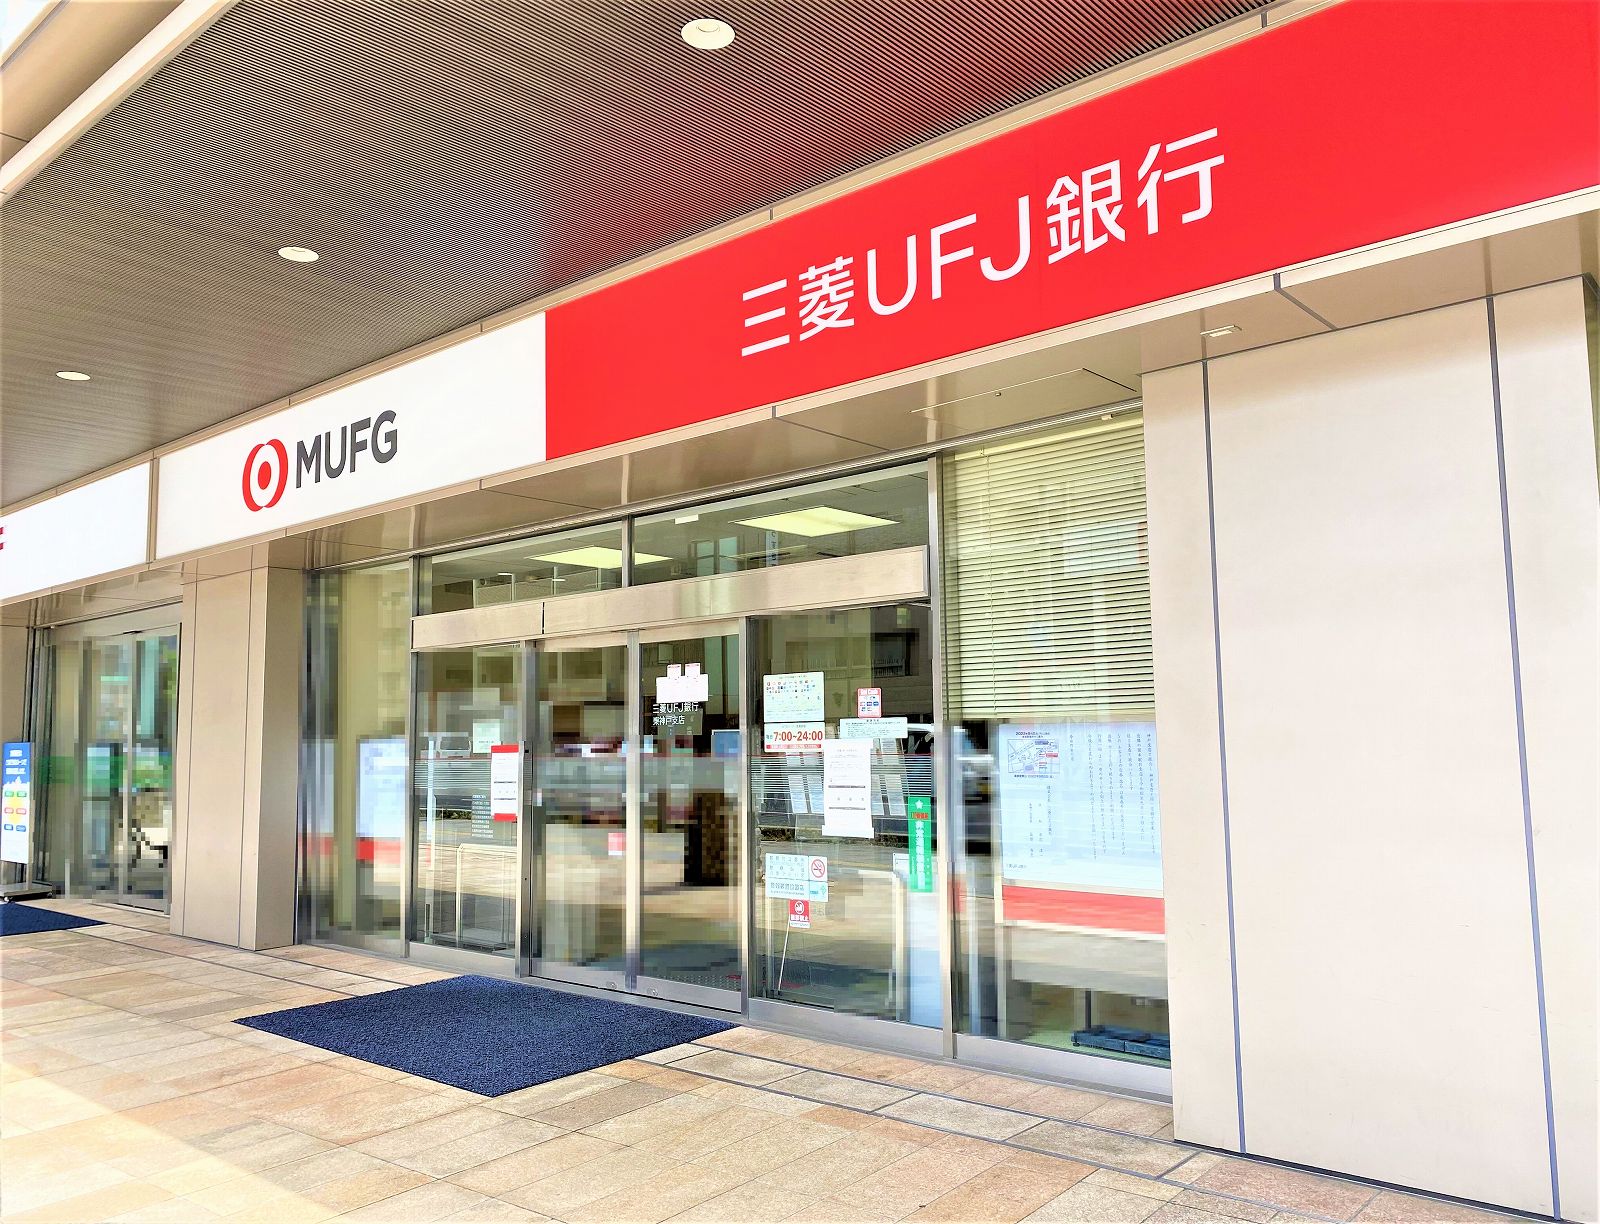 三菱UFJ銀行 東神戸支店」さんが2022年9月5日（月）より元町にある神戸支店・神戸中央支店内に統合されます #三菱UFJ銀行 #MUFG #六甲道  | 東灘ジャーナル